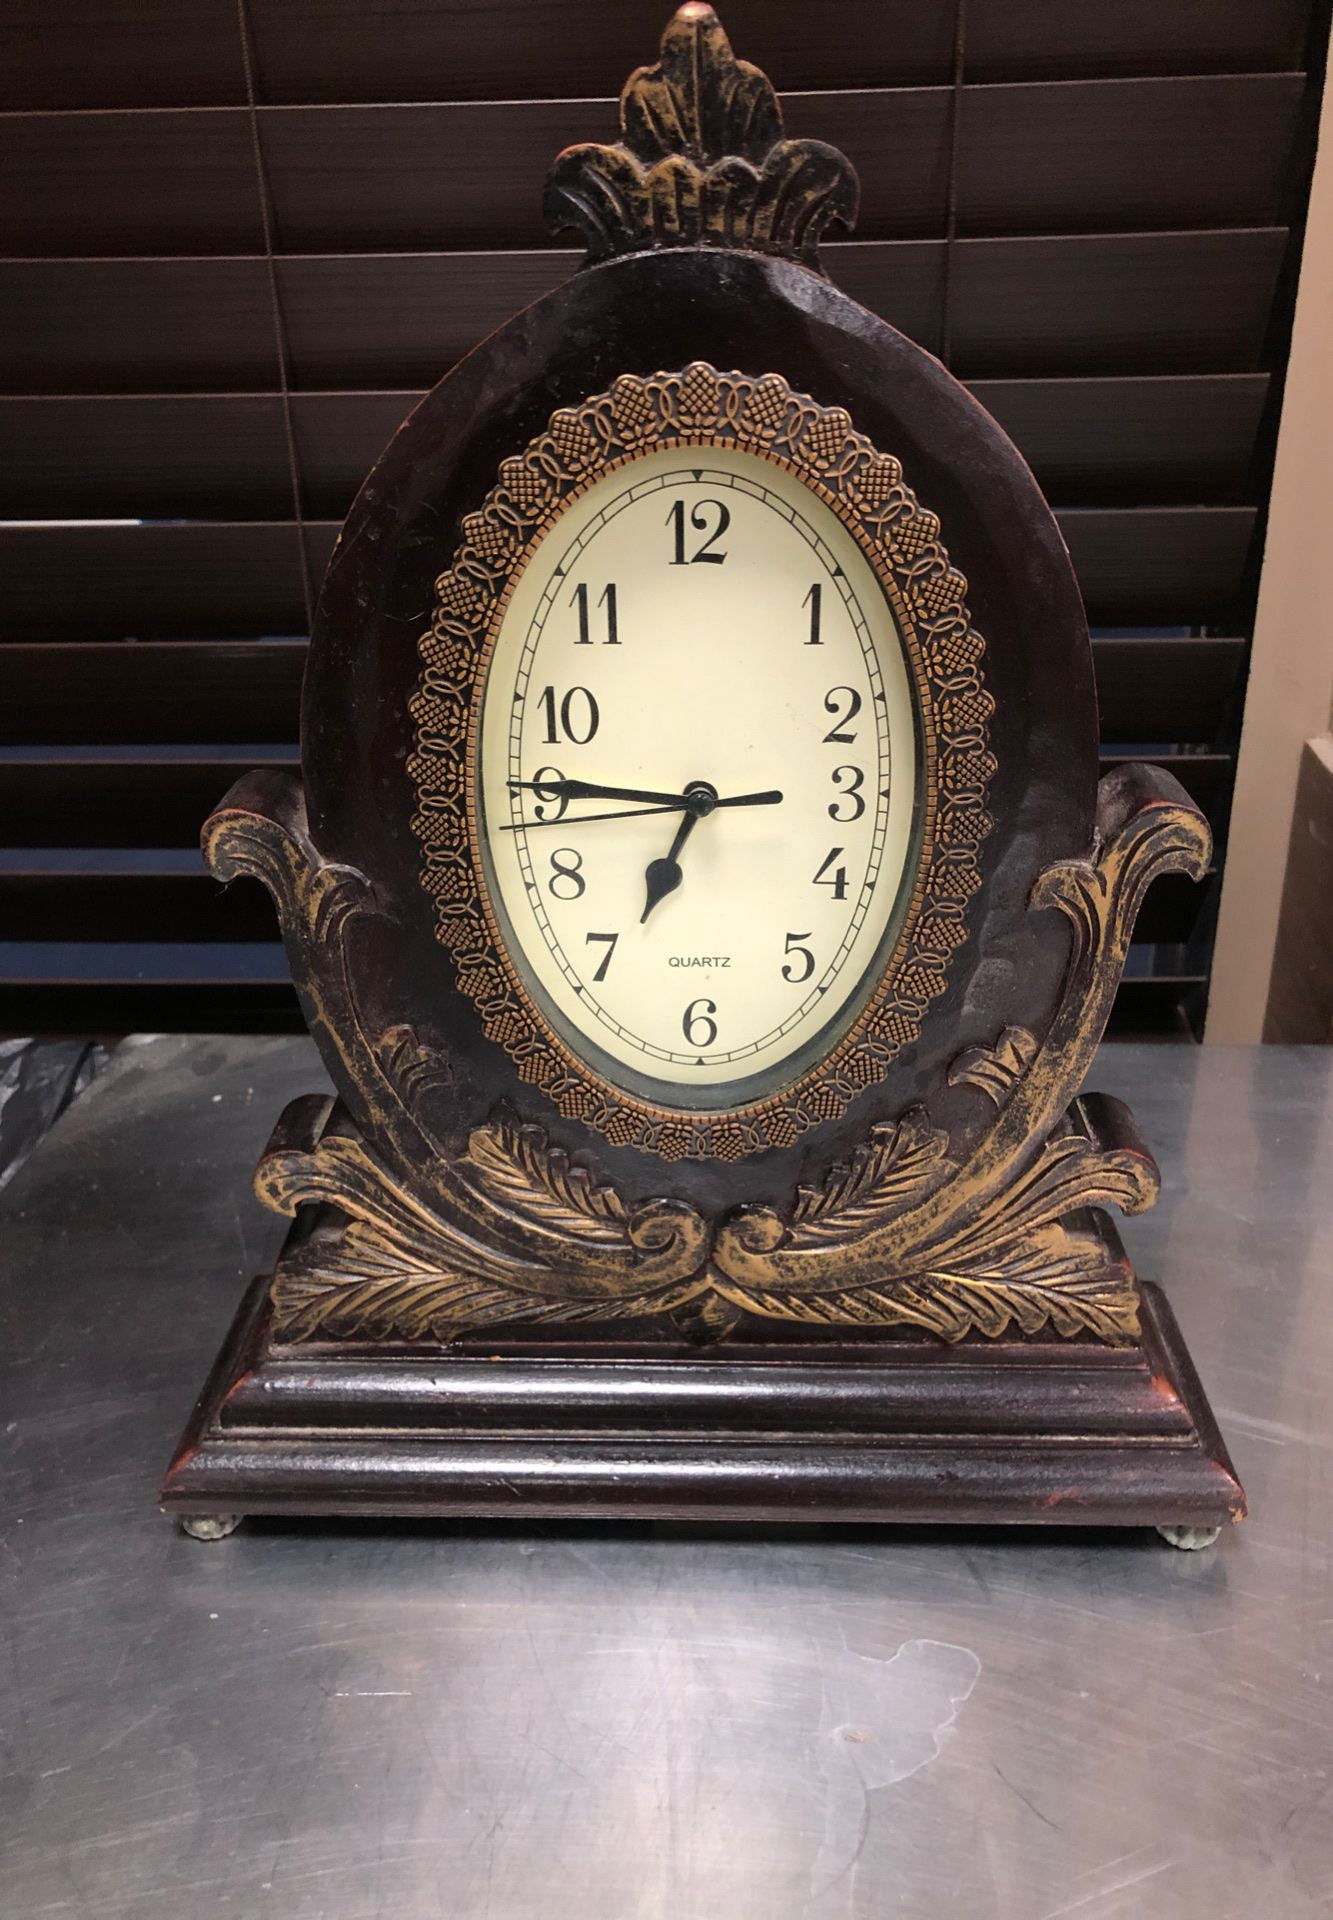 Antique clock 12”x14”